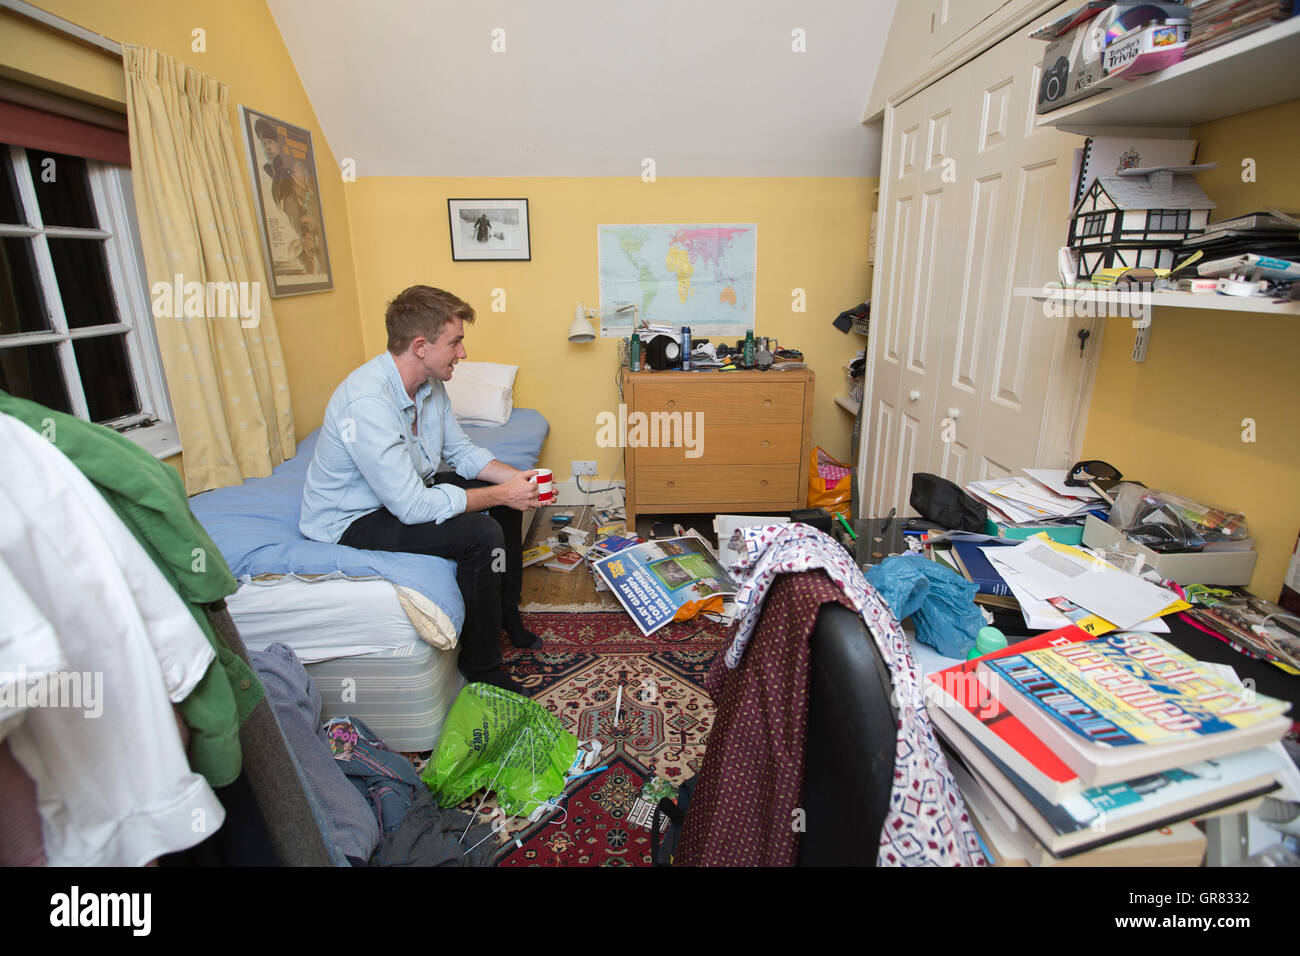 24-Year-Old University Graduate zurück in seine Kindheit Schlafzimmer im Elternhaus aufgrund steigenden Immobilienpreise und Student Schulden Leben Stockfoto